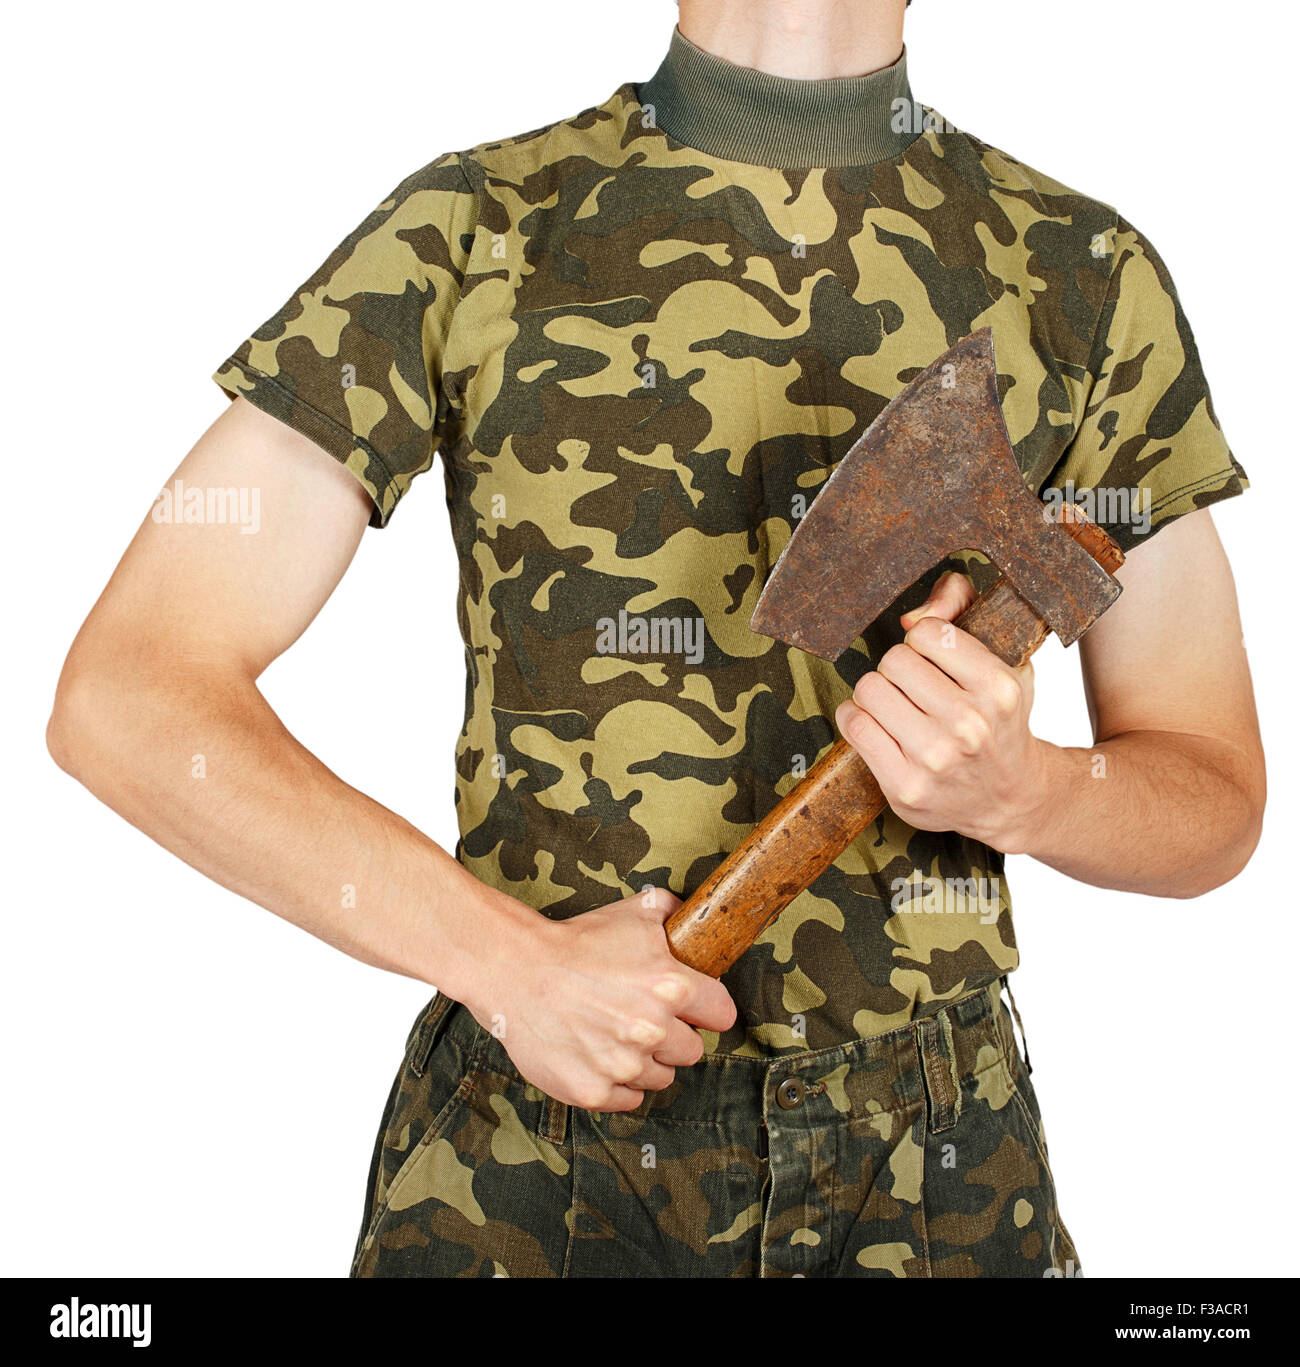 Soldat en uniforme avec une hache dans les mains isolé sur fond blanc Banque D'Images